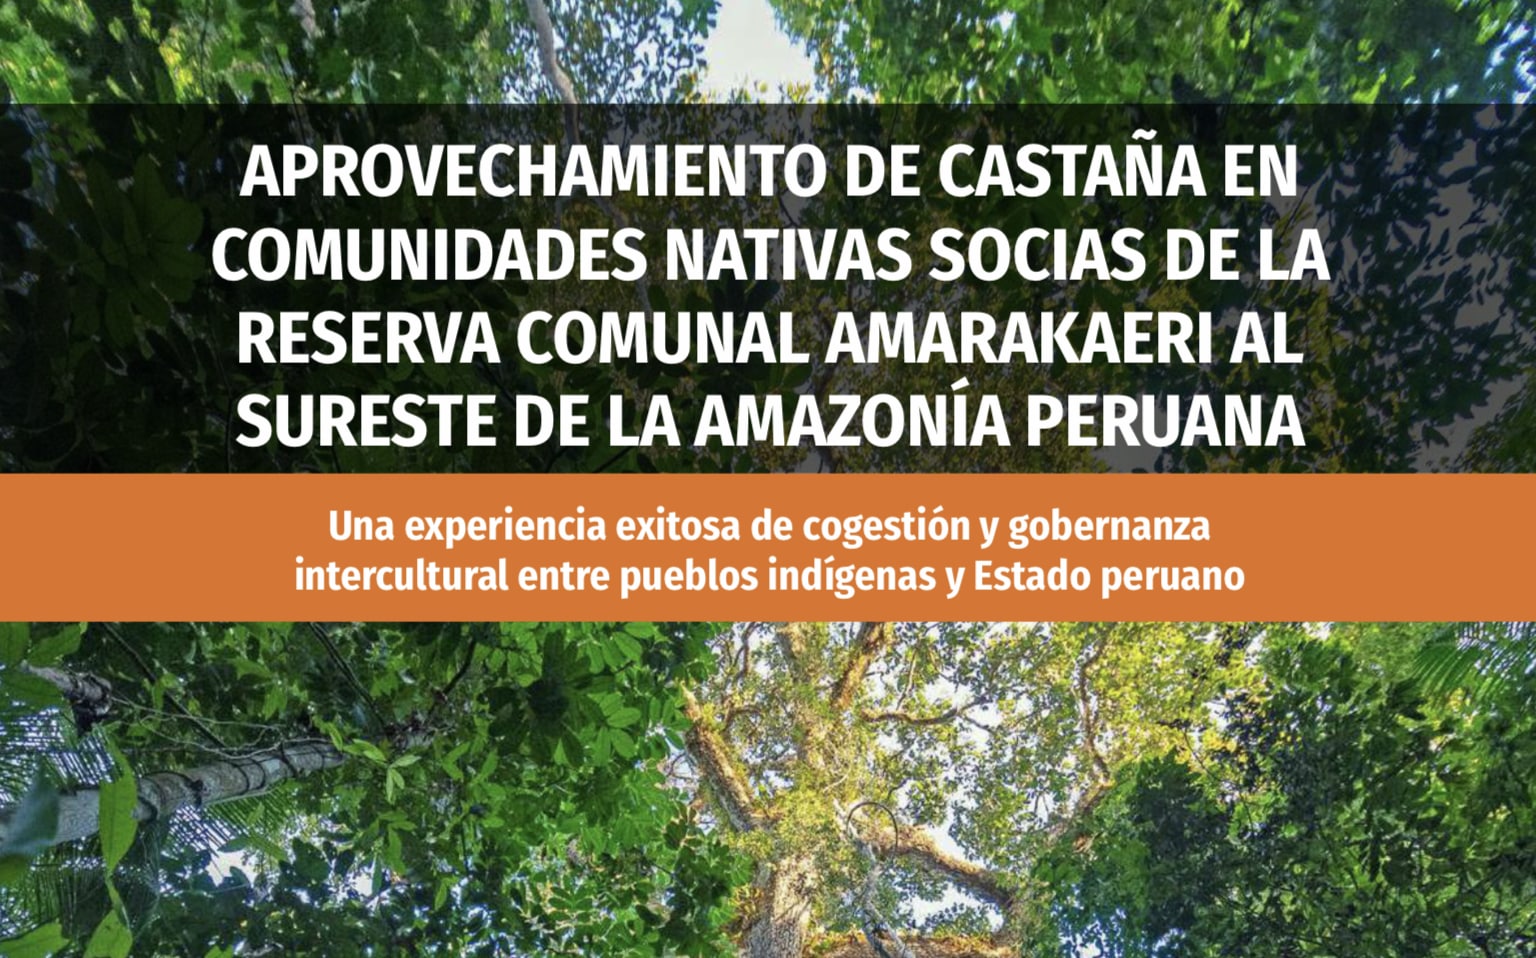 Aprovechamiento de castaña en comunidades nativas socias de la Reserva Comunal Amarakaeri al sureste de la Amazonía peruana